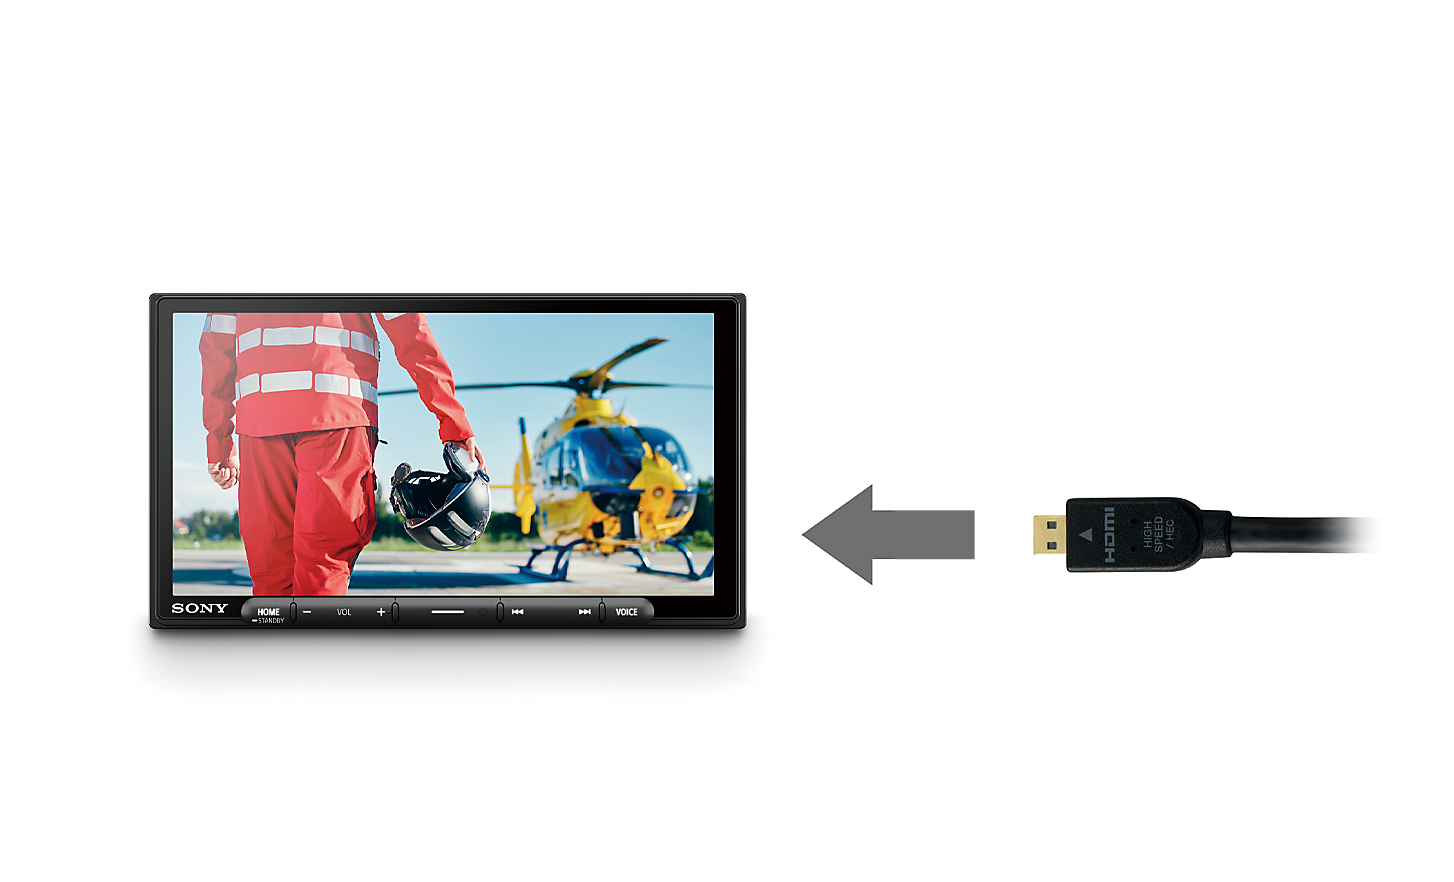 Slika kabla HDMI s puščico, usmerjeno proti XAV-AX6050, na zaslonu pa je prikazan pilot in helikopter